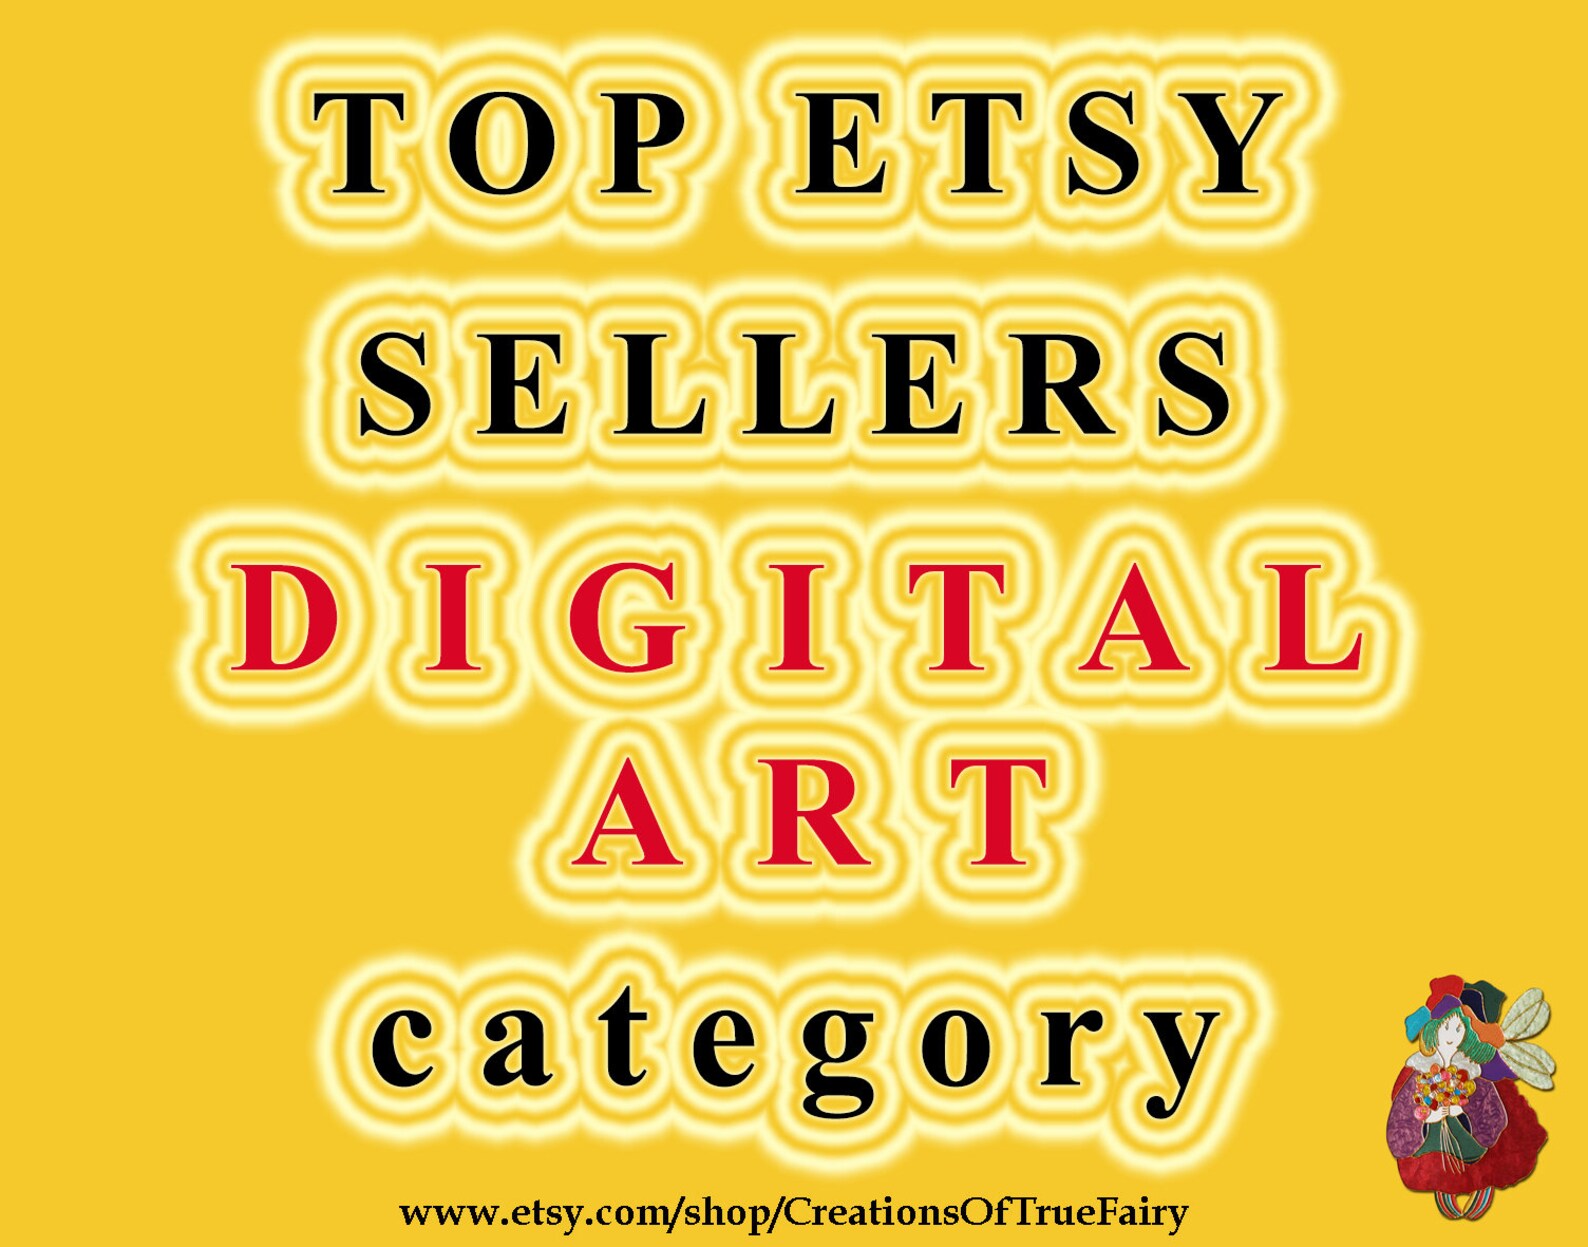 Top Etsy sellers DIGITAL ART category Top selling digital art | Etsy